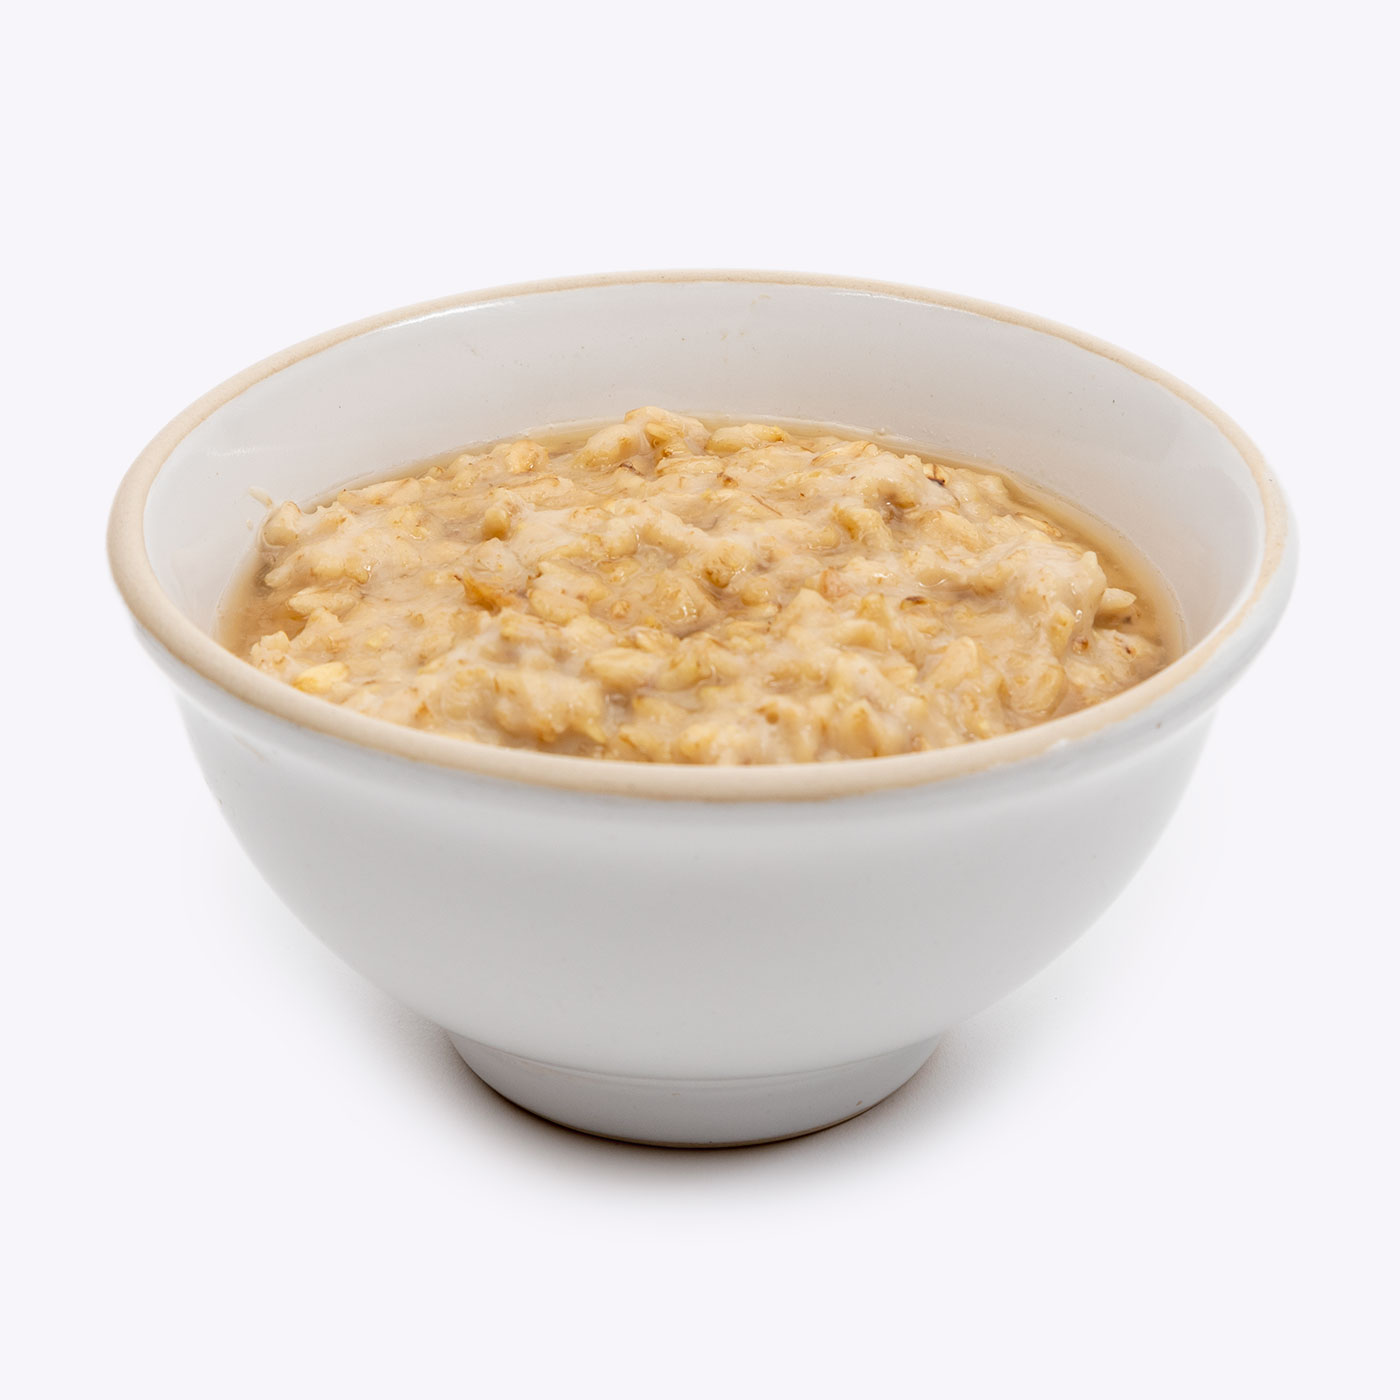 Porridge with Honey